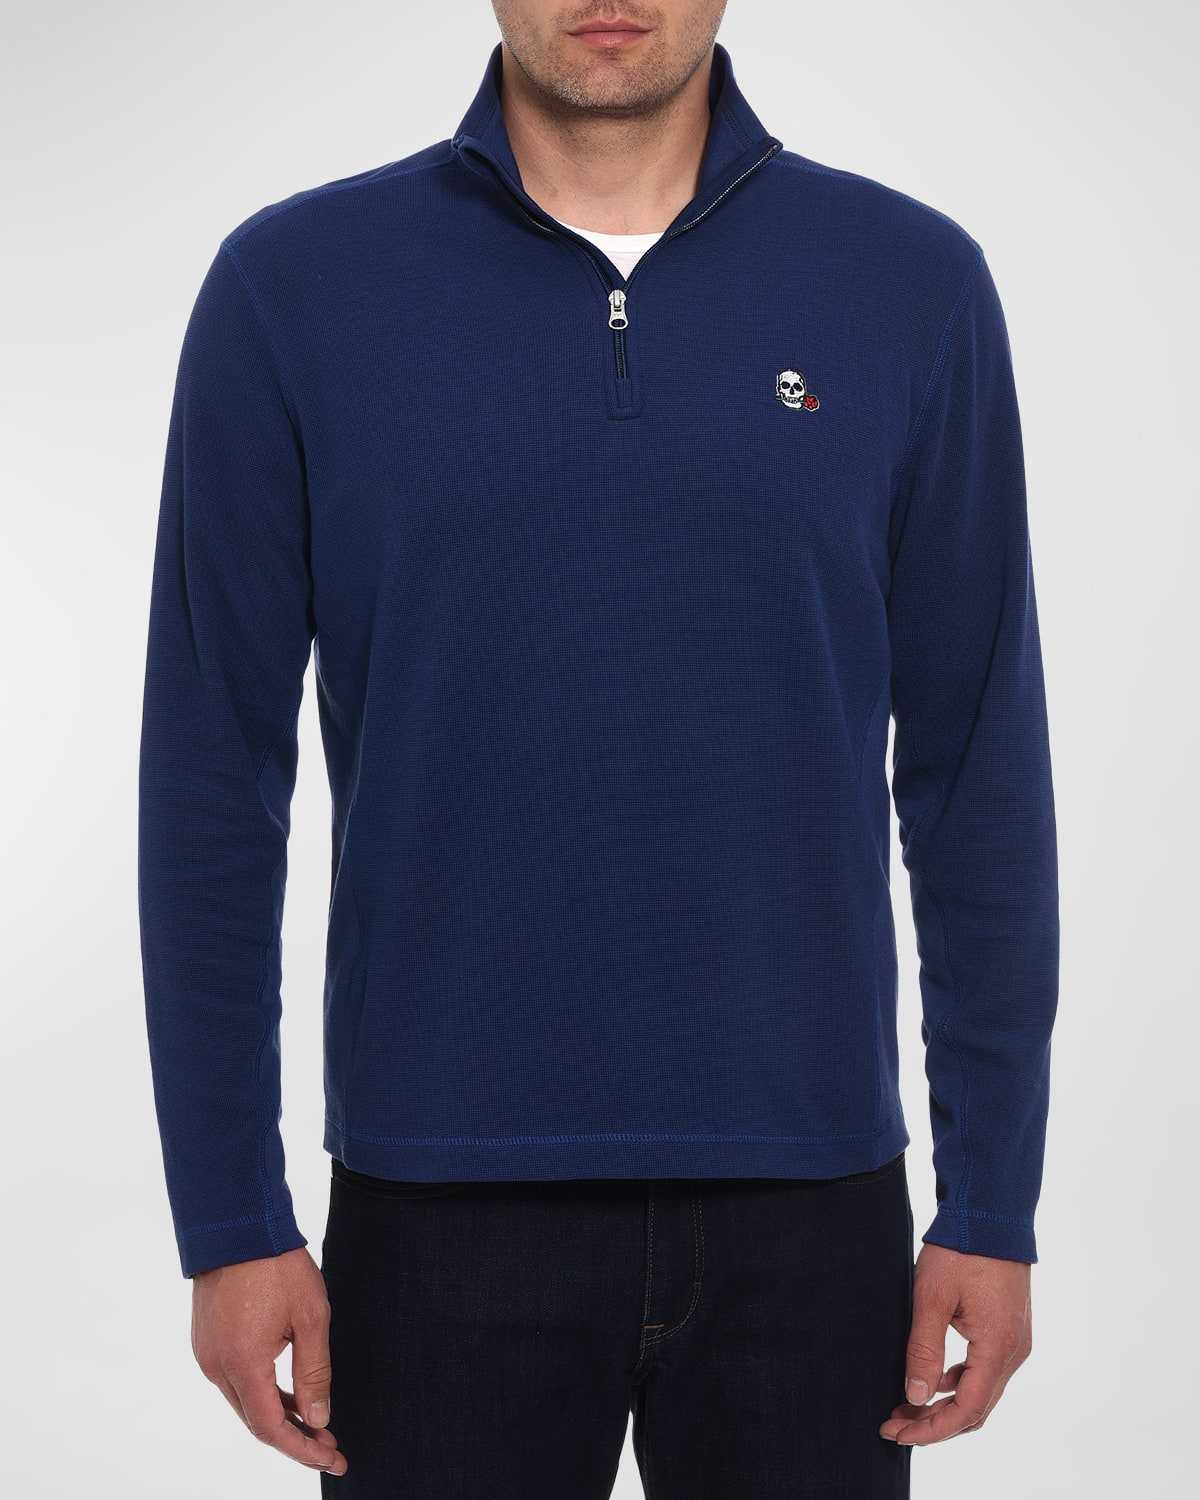 Men's Polaris Quarter-Zip Sweater